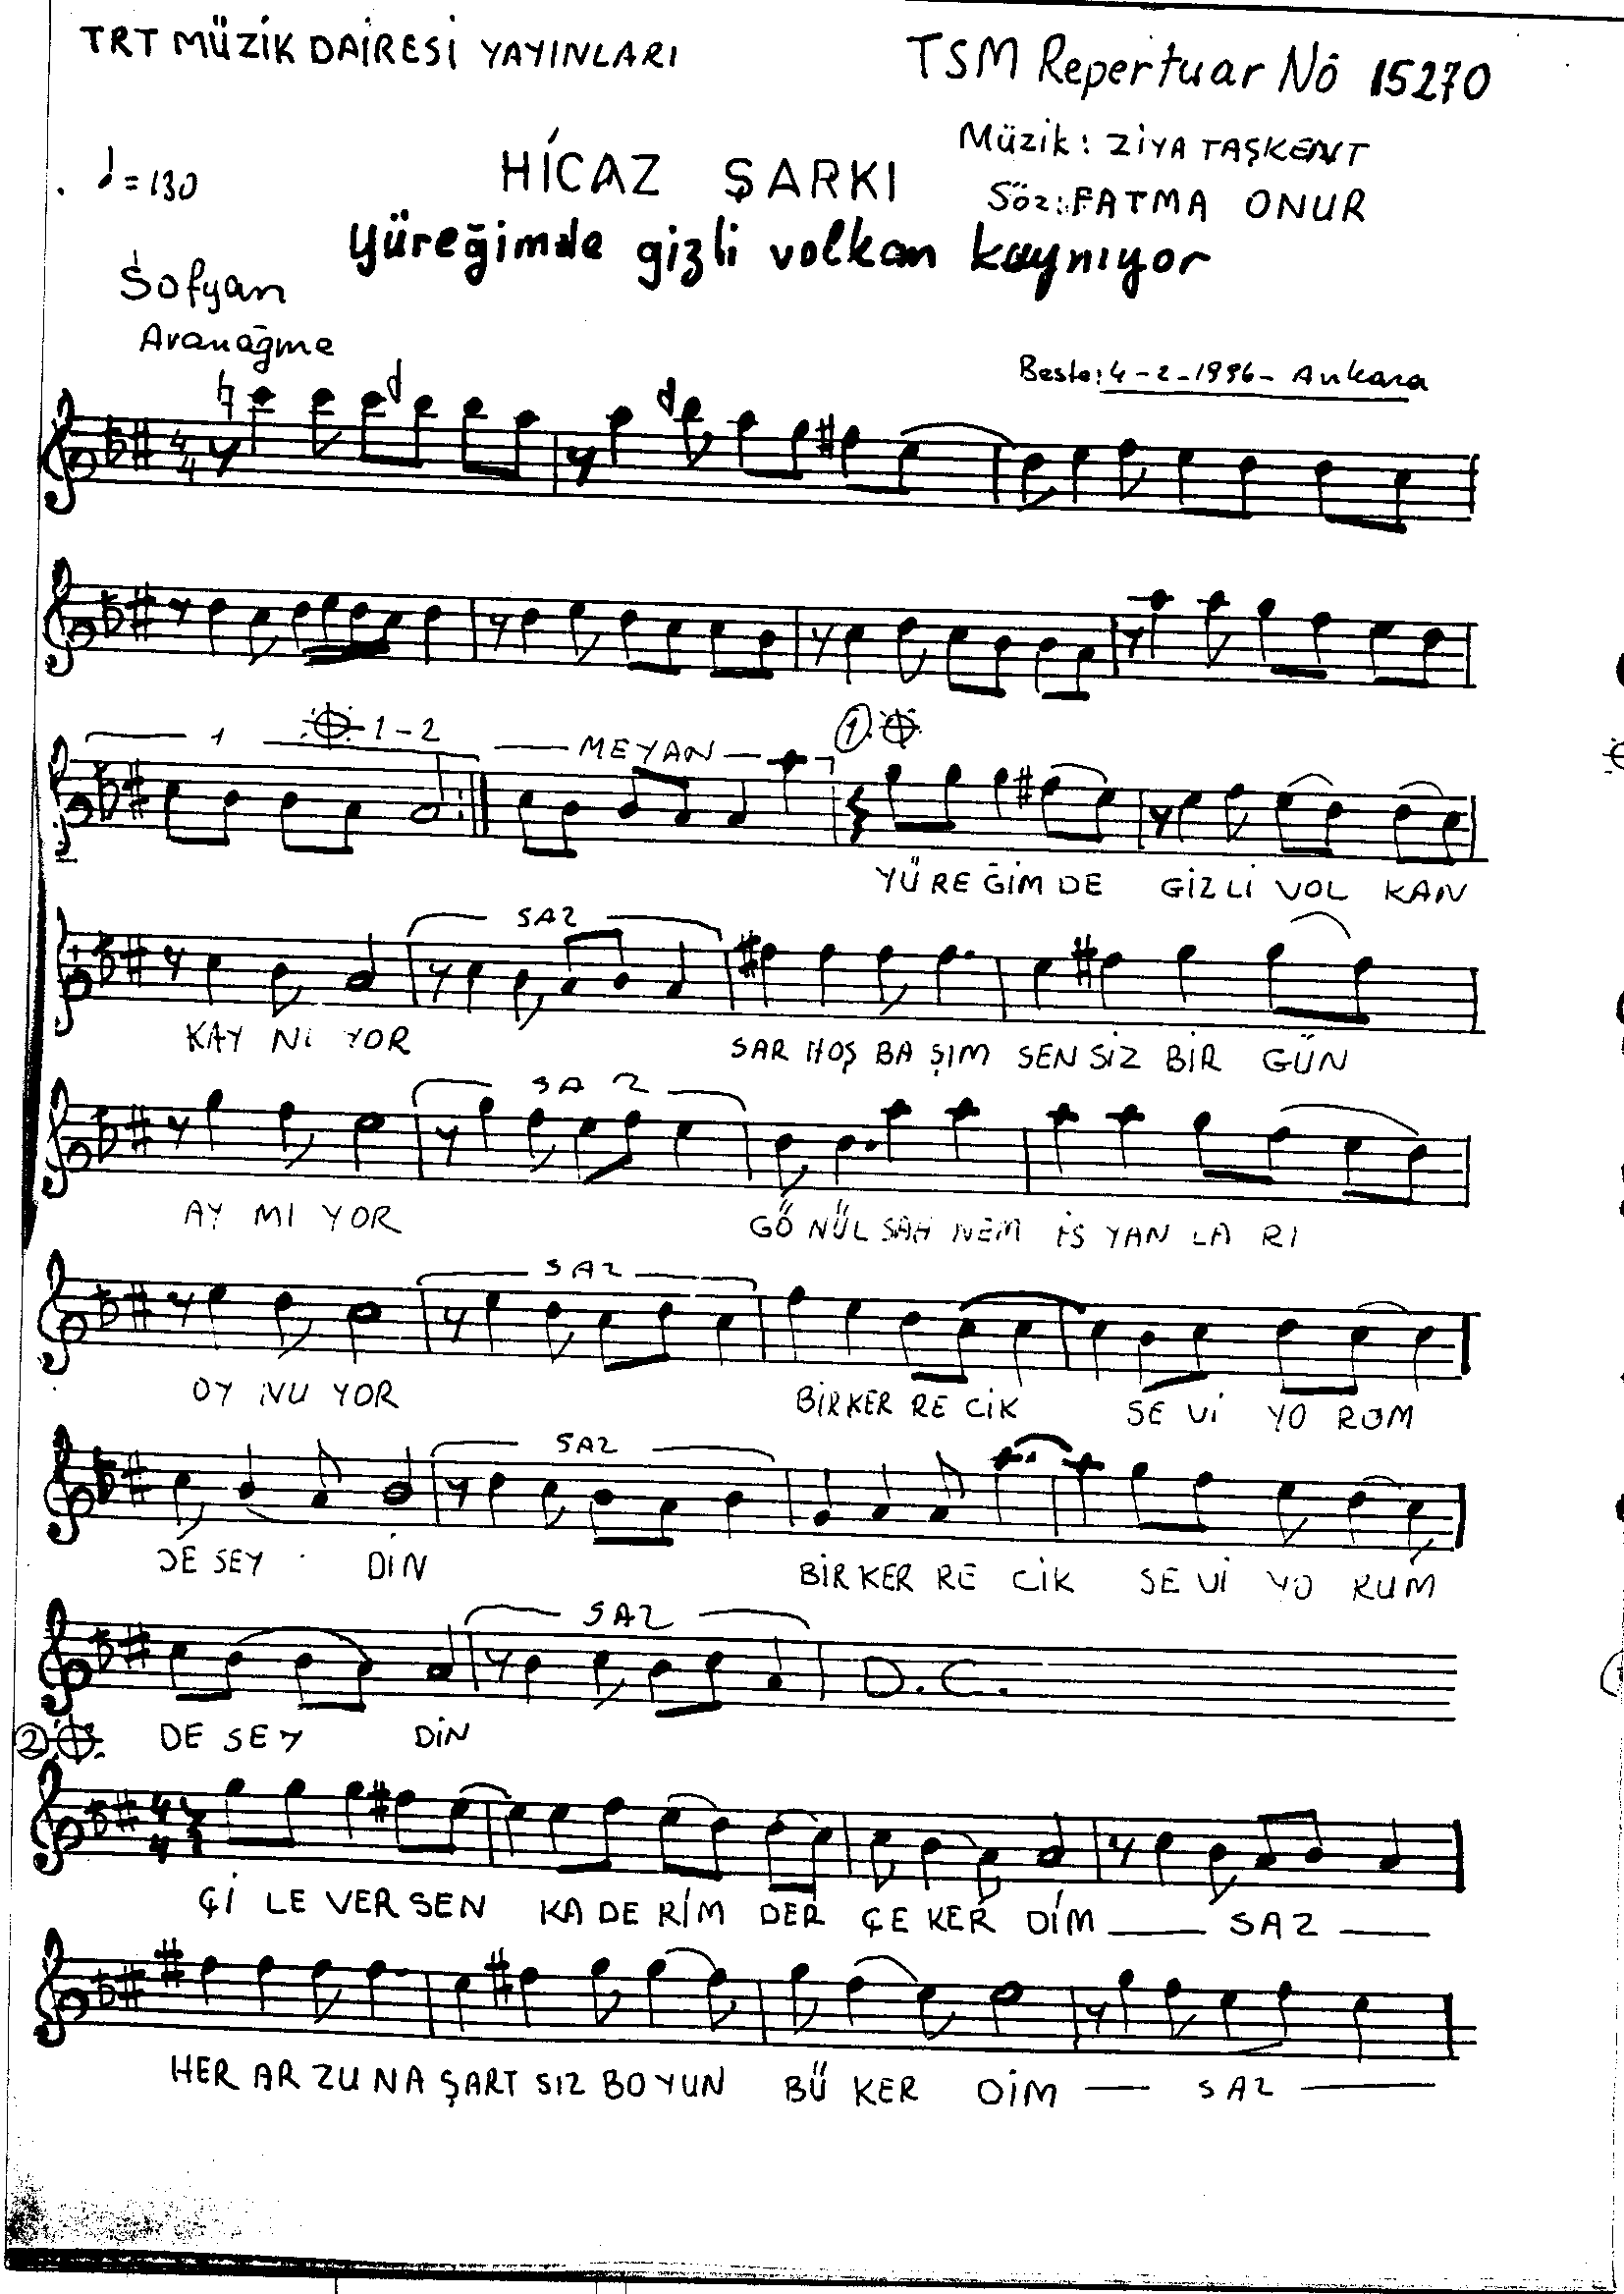 Hicâz - Şarkı - Ziyâ Taşkent - Sayfa 1